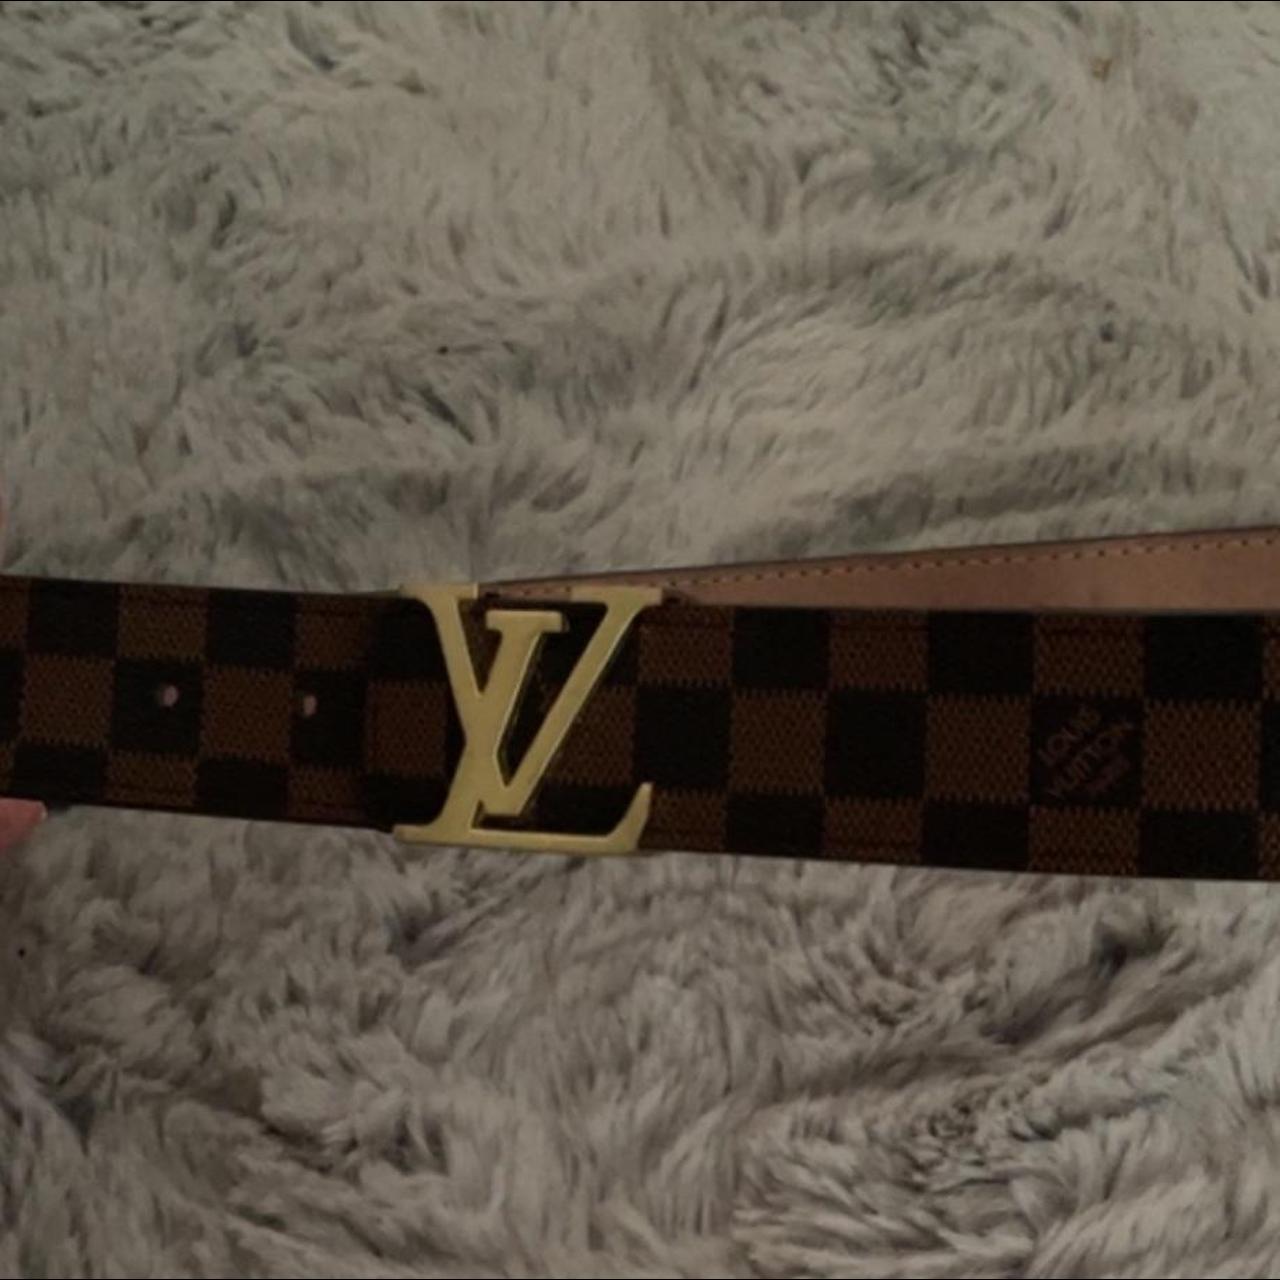 Louis Vuitton x Virgil Abloh Holographic Belt , Near